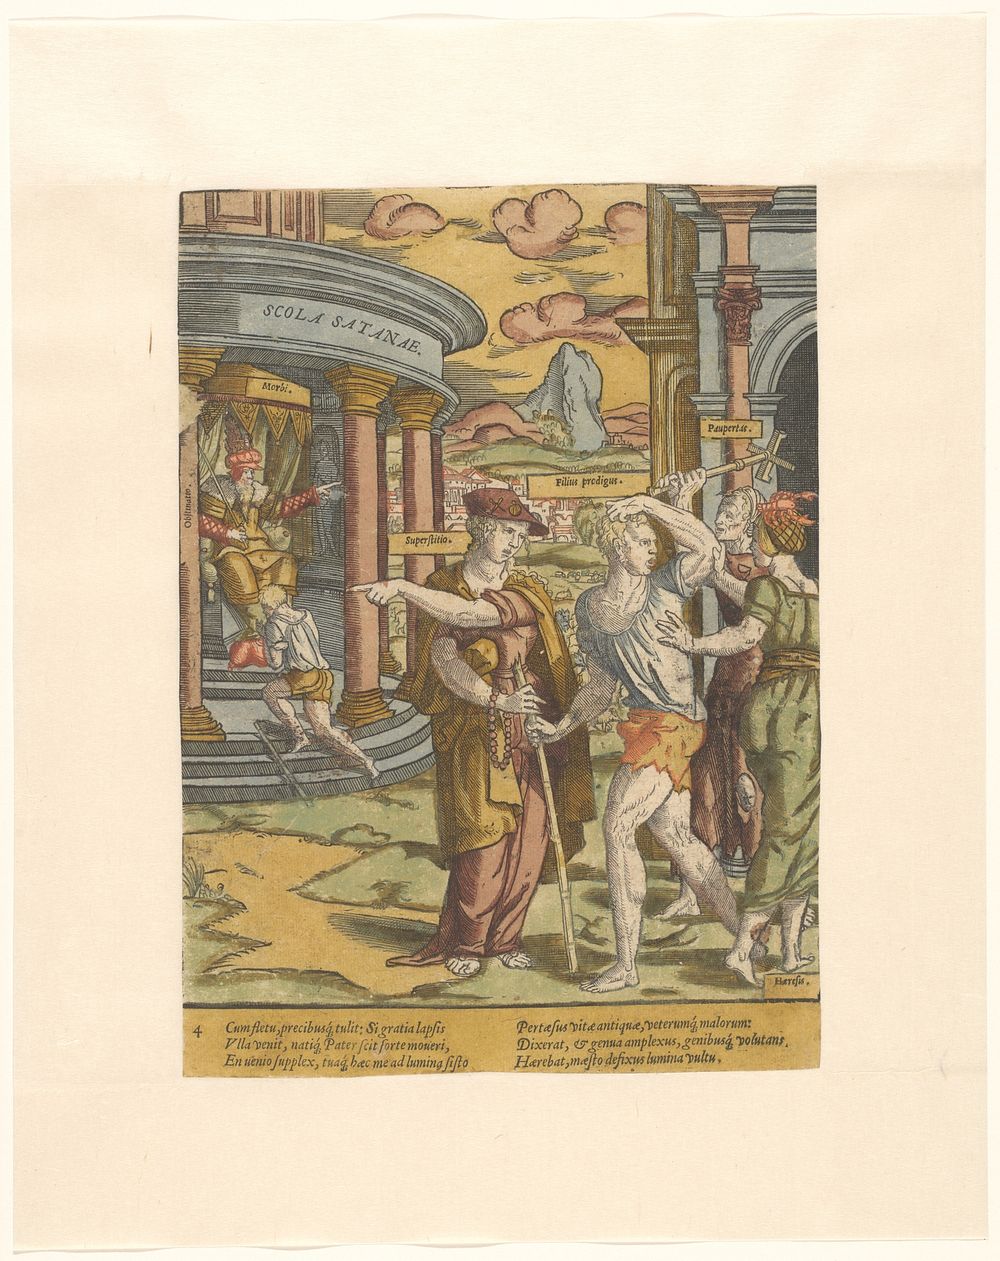 De verdrijving van de verloren zoon (c. 1540 - c. 1550) by Cornelis Anthonisz and Cornelis Anthonisz